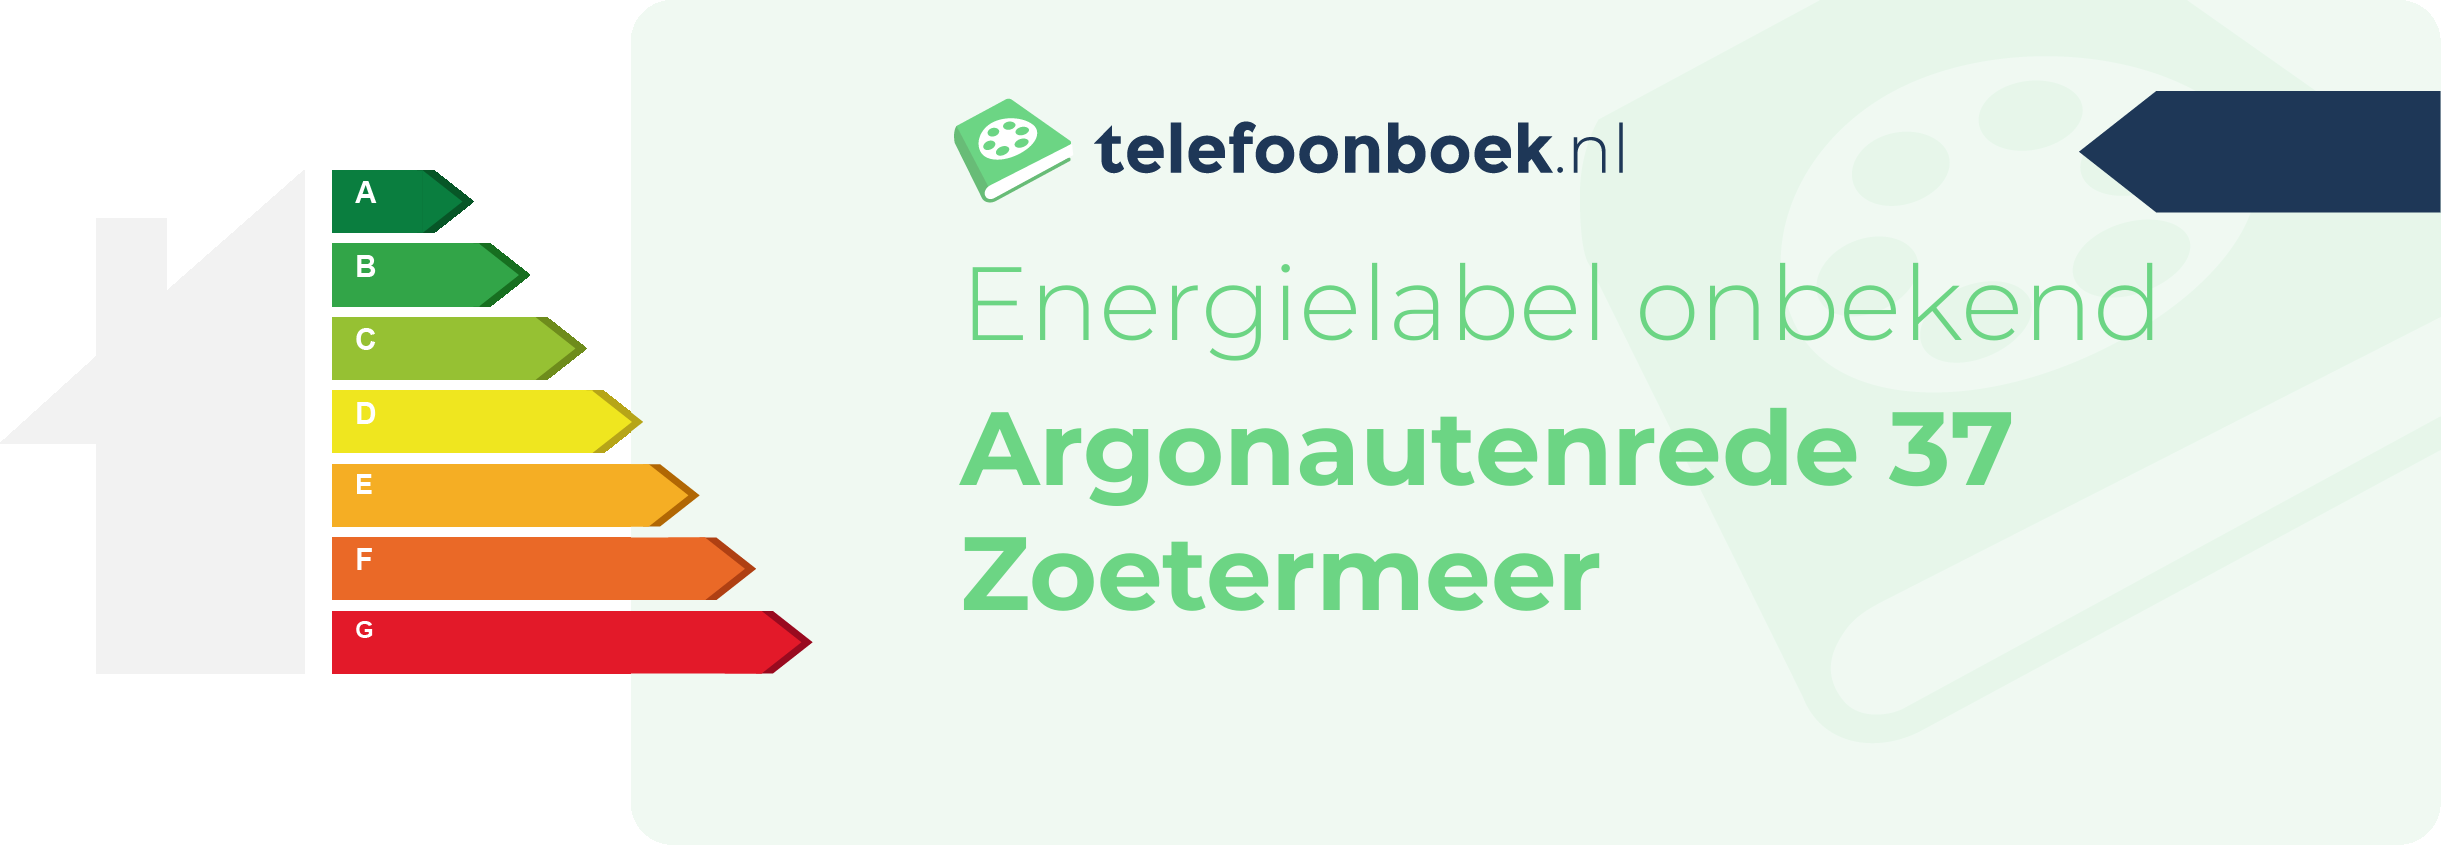 Energielabel Argonautenrede 37 Zoetermeer